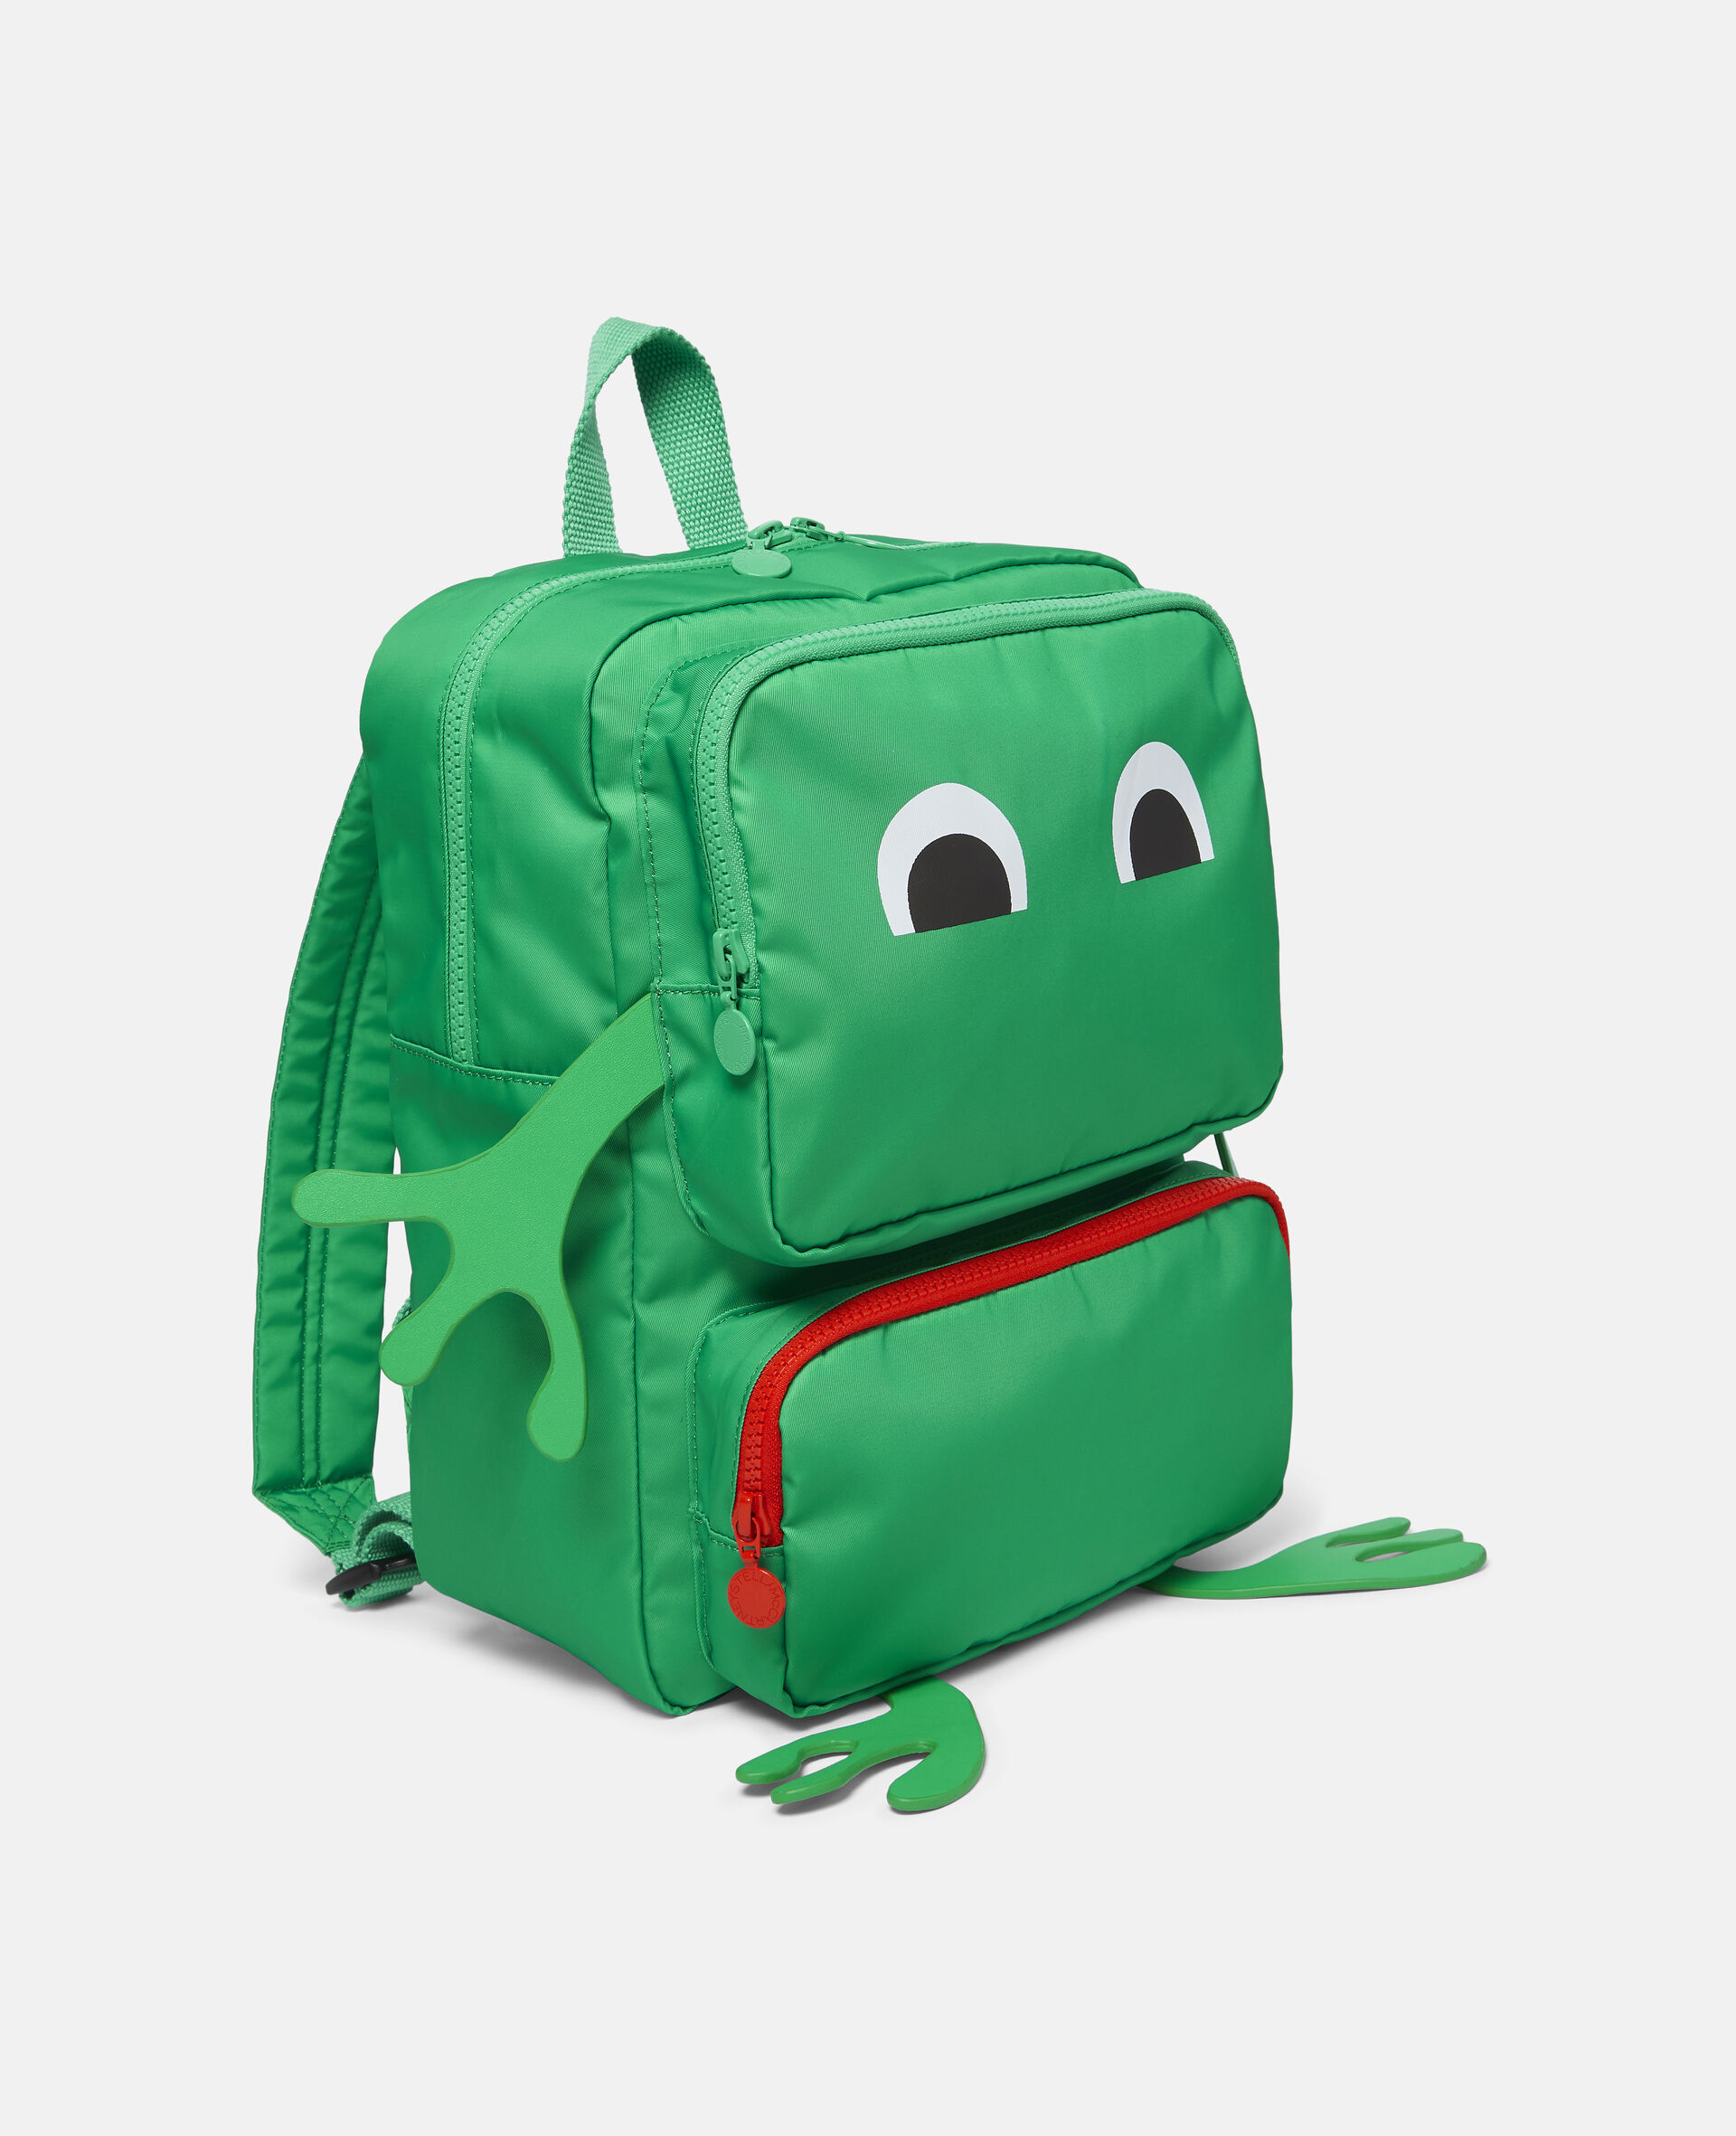 Frog Backpack-Green-large image number 1